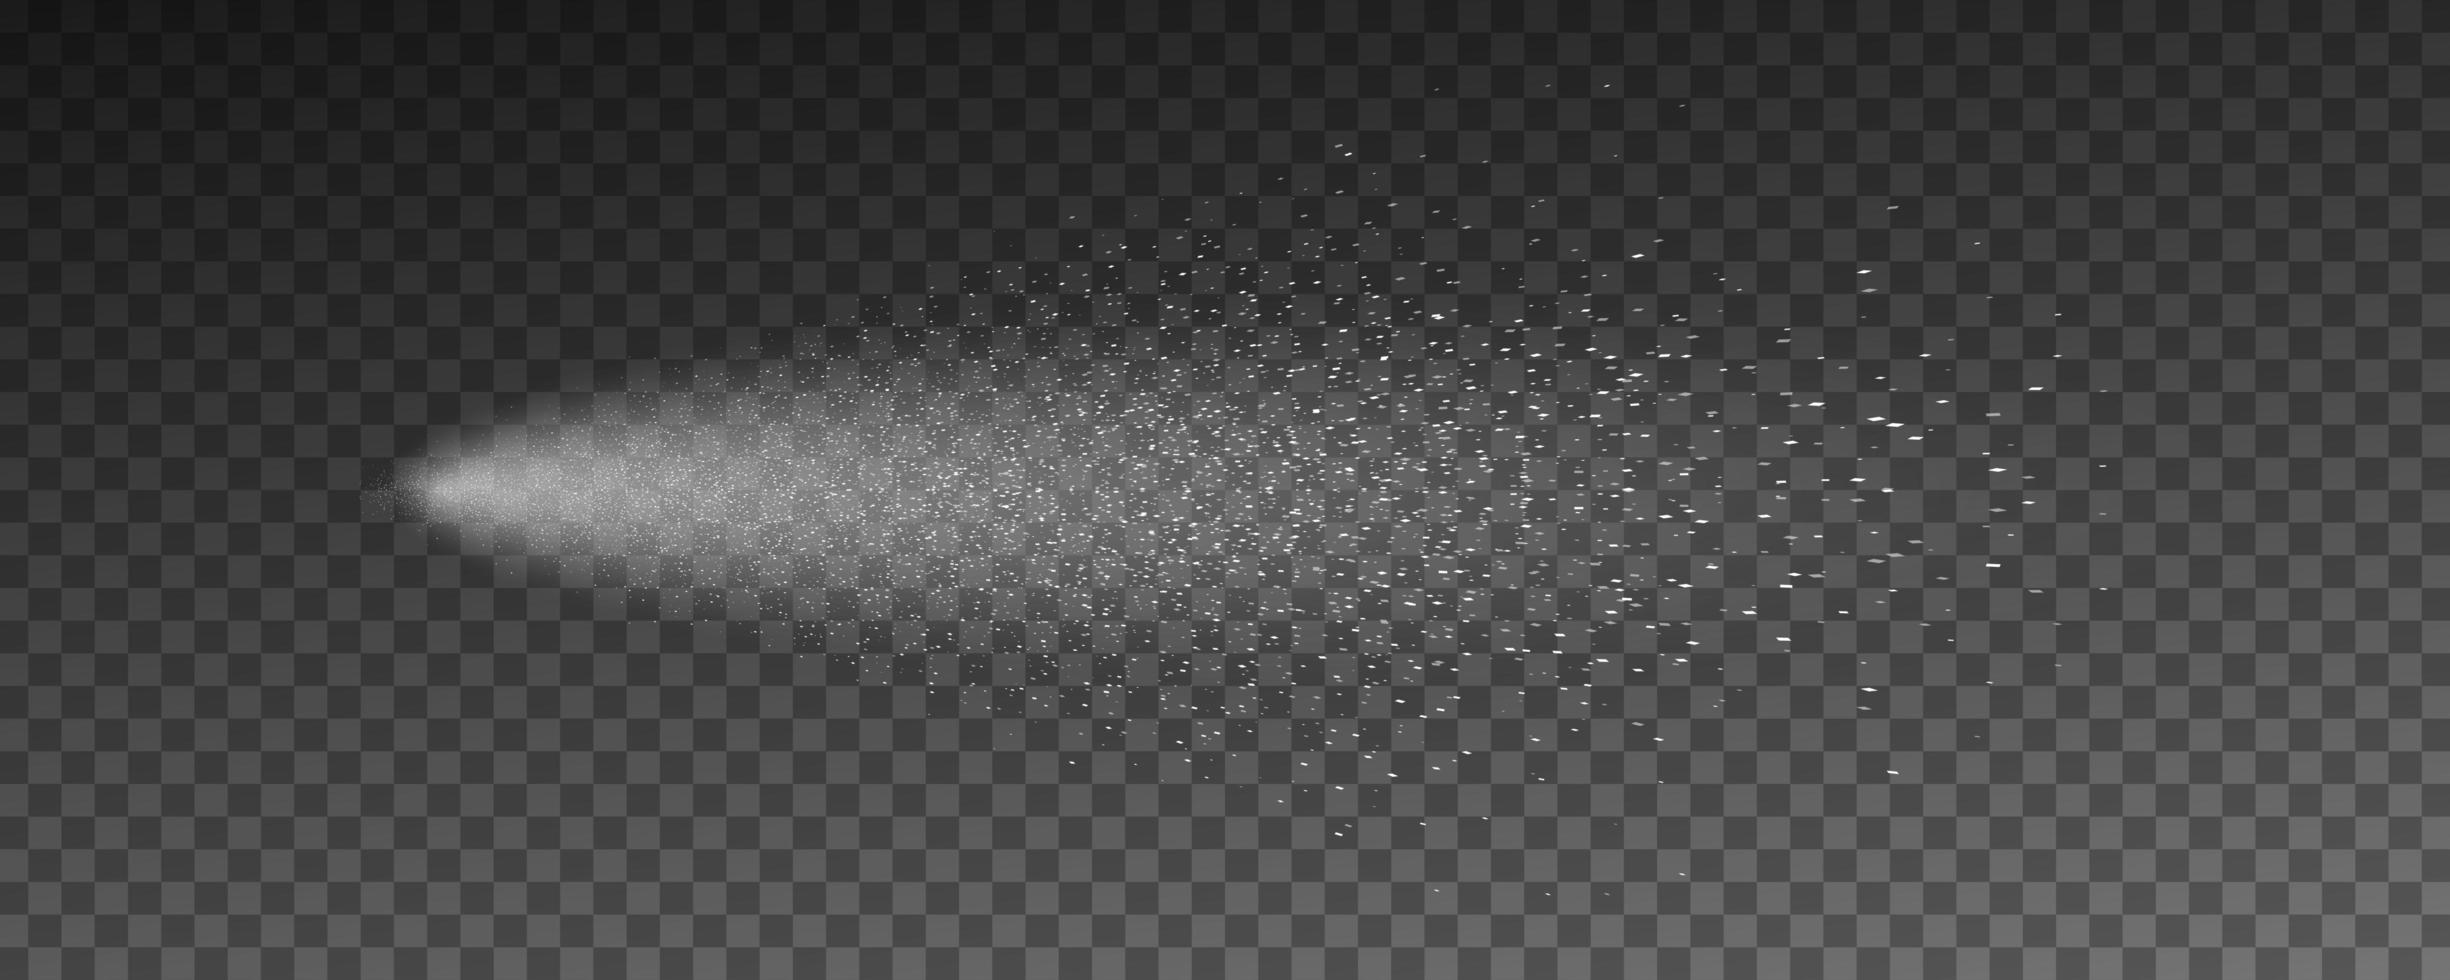 Wassersprühschablone isoliert auf dunklem transparentem Hintergrund. vektor